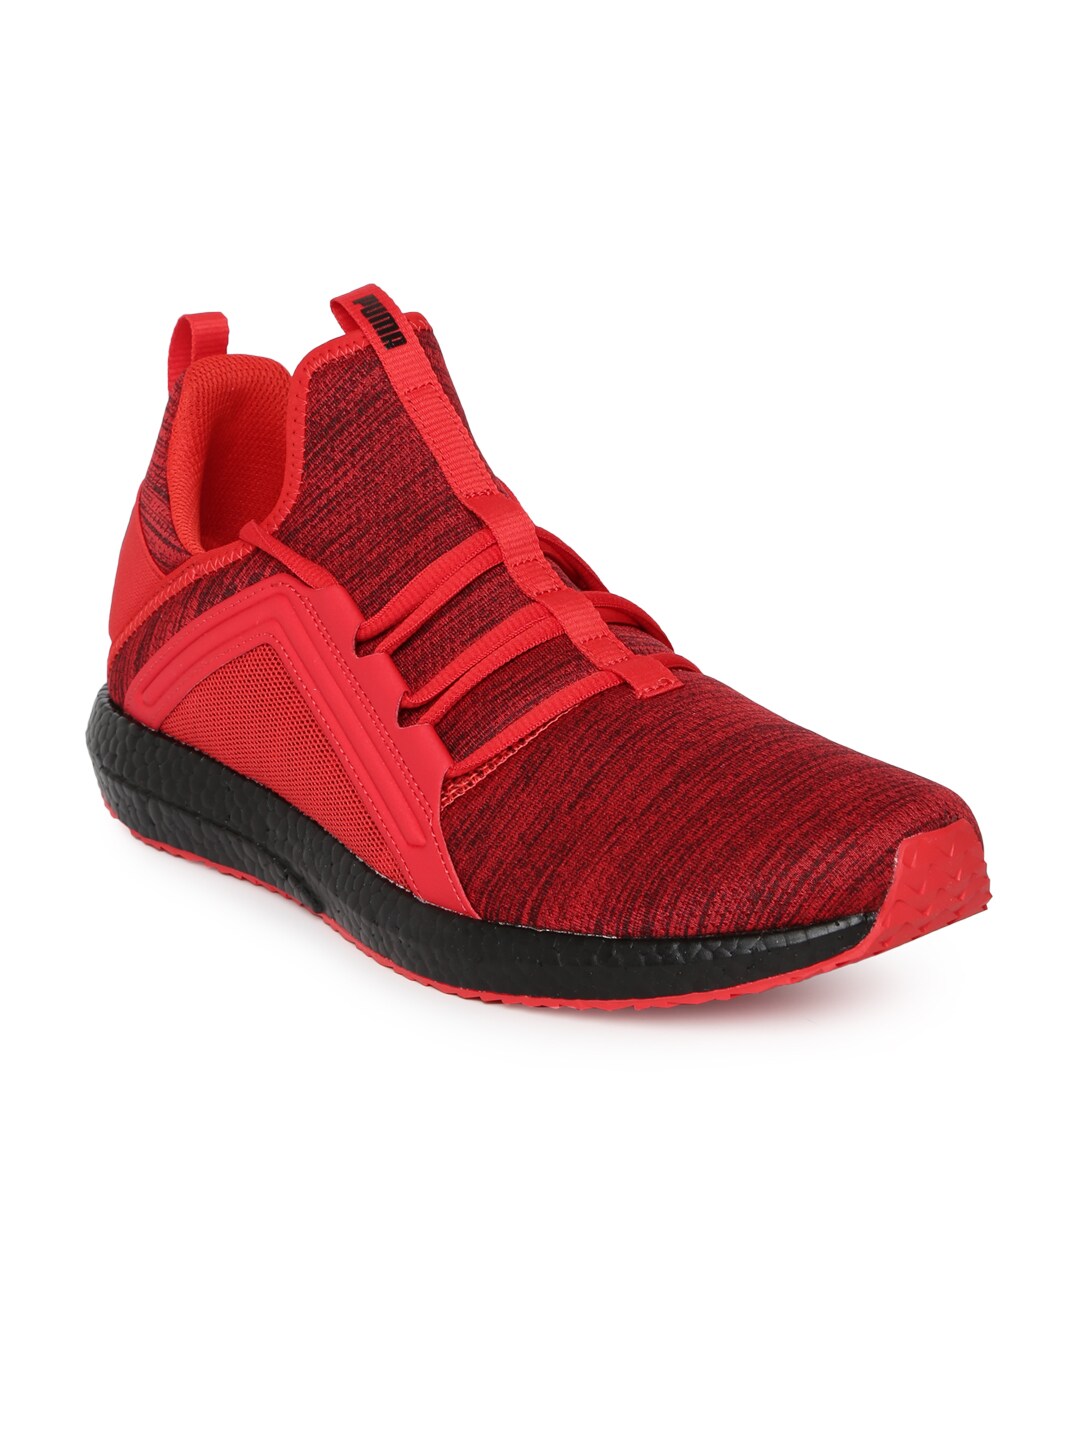 mens red puma shoes